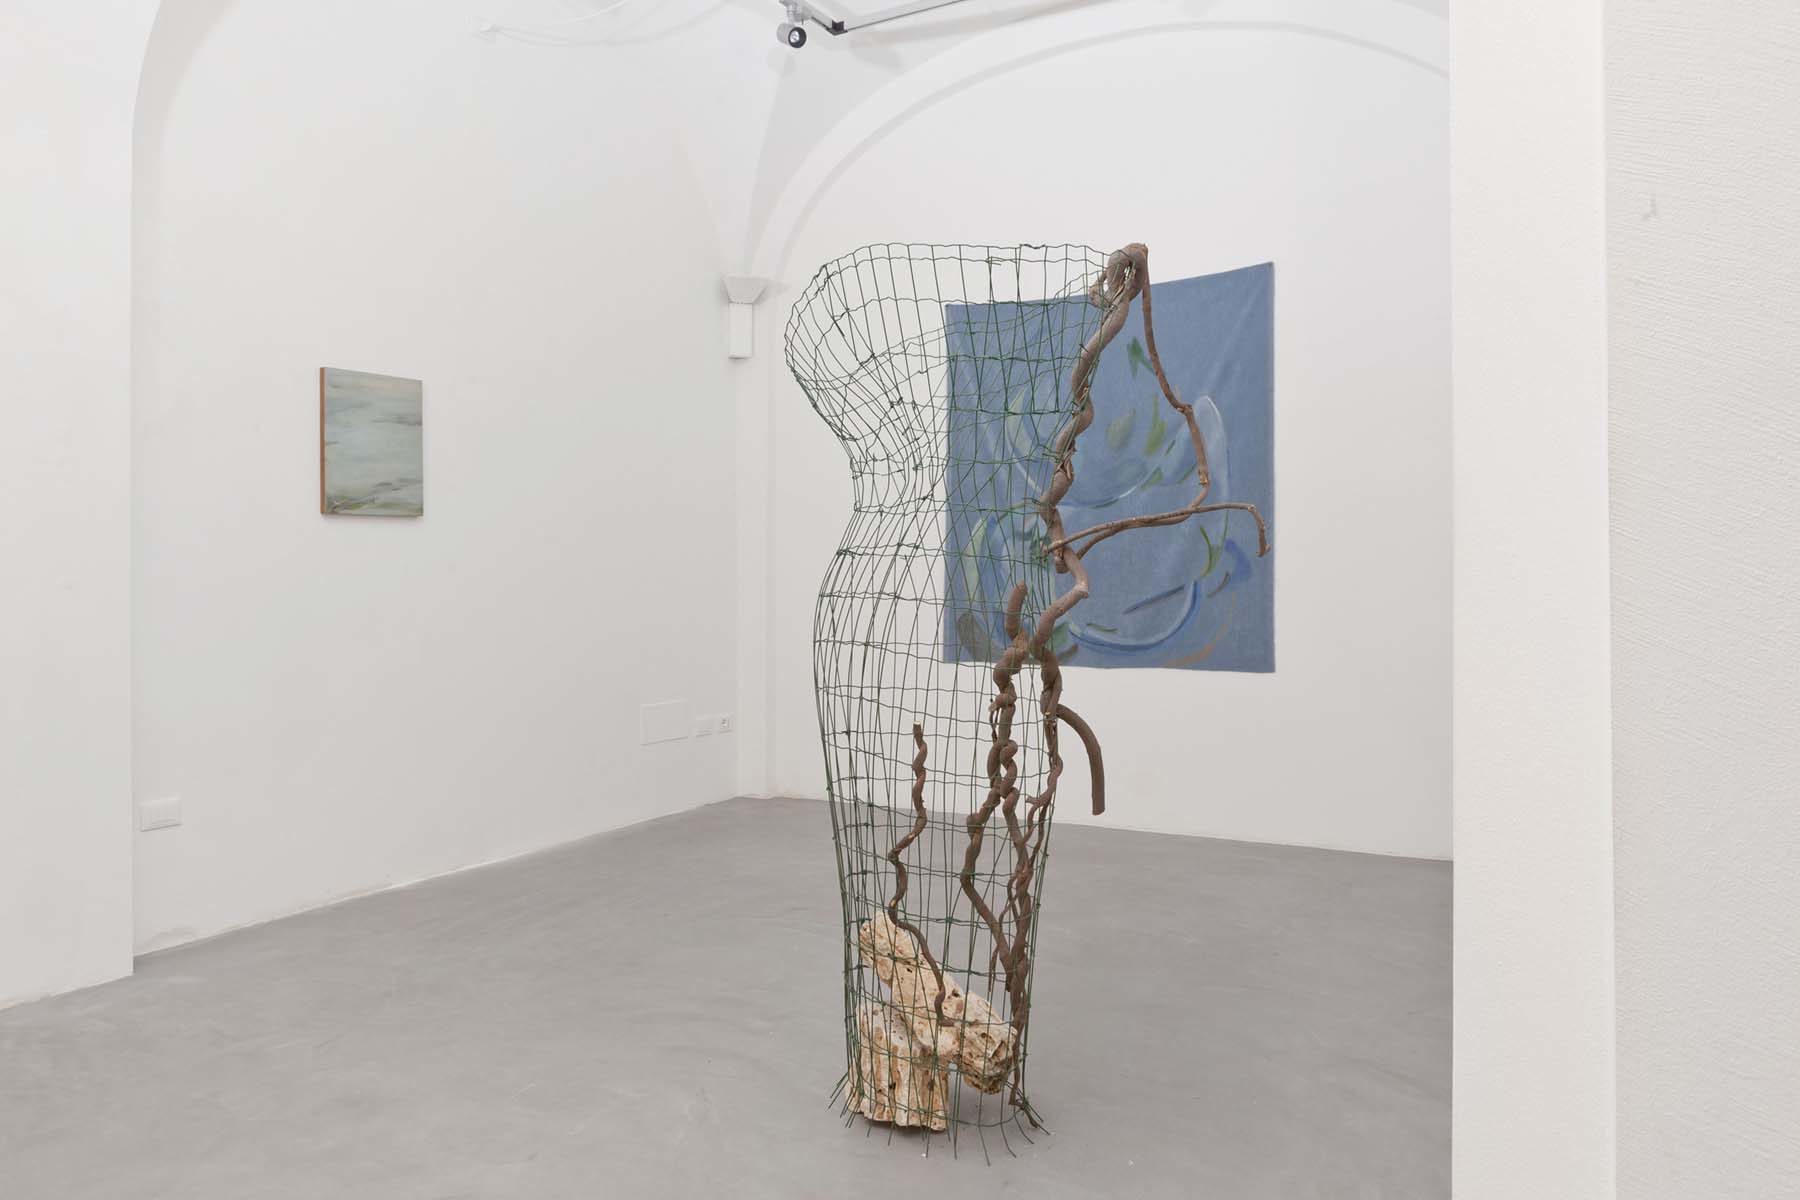 Slittamenti e Margini, 2018, exhibition view, Passaggi Arte Contemporanea, Pisa, ph. N. Belluzzi